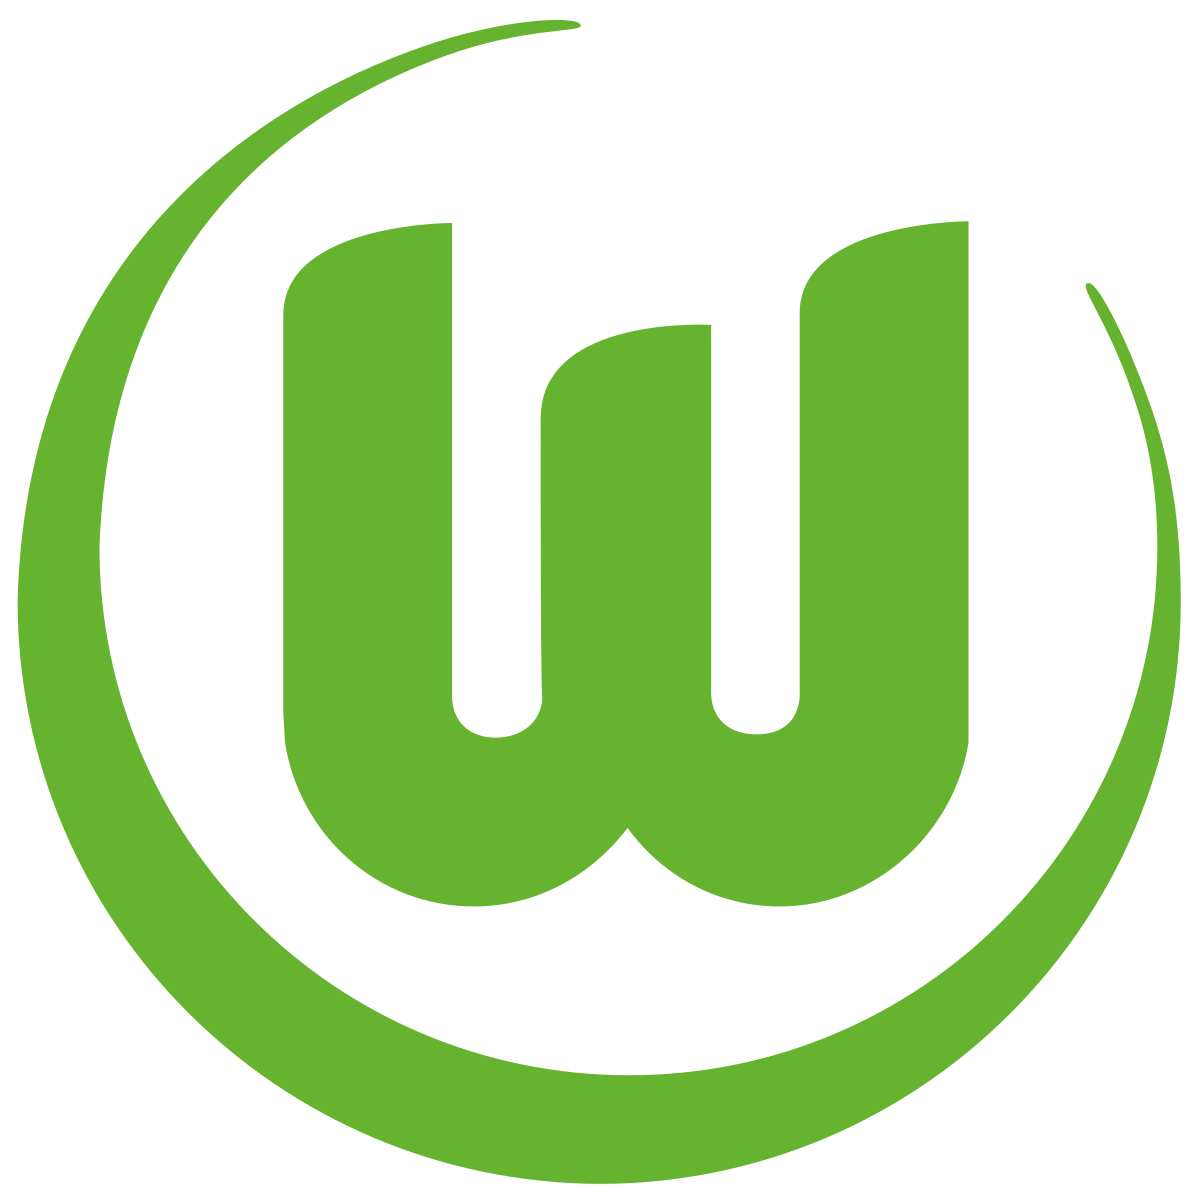 VfL Wolfsburg - Wikipedia